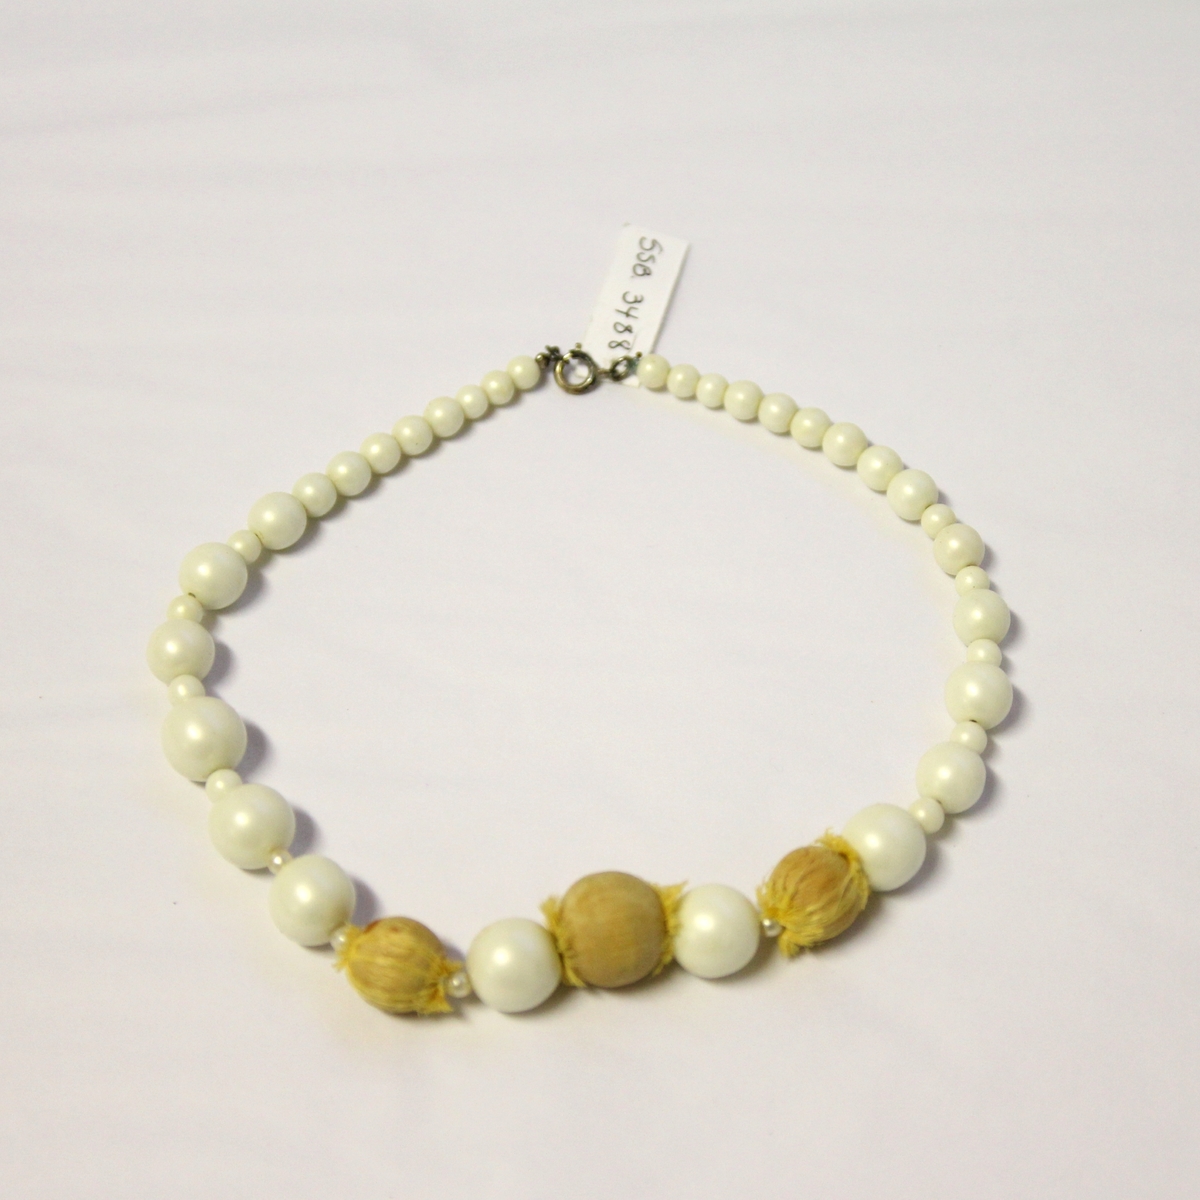 Halskjede/-smykke av imiterte perler og små frukter: plommer og pærer.